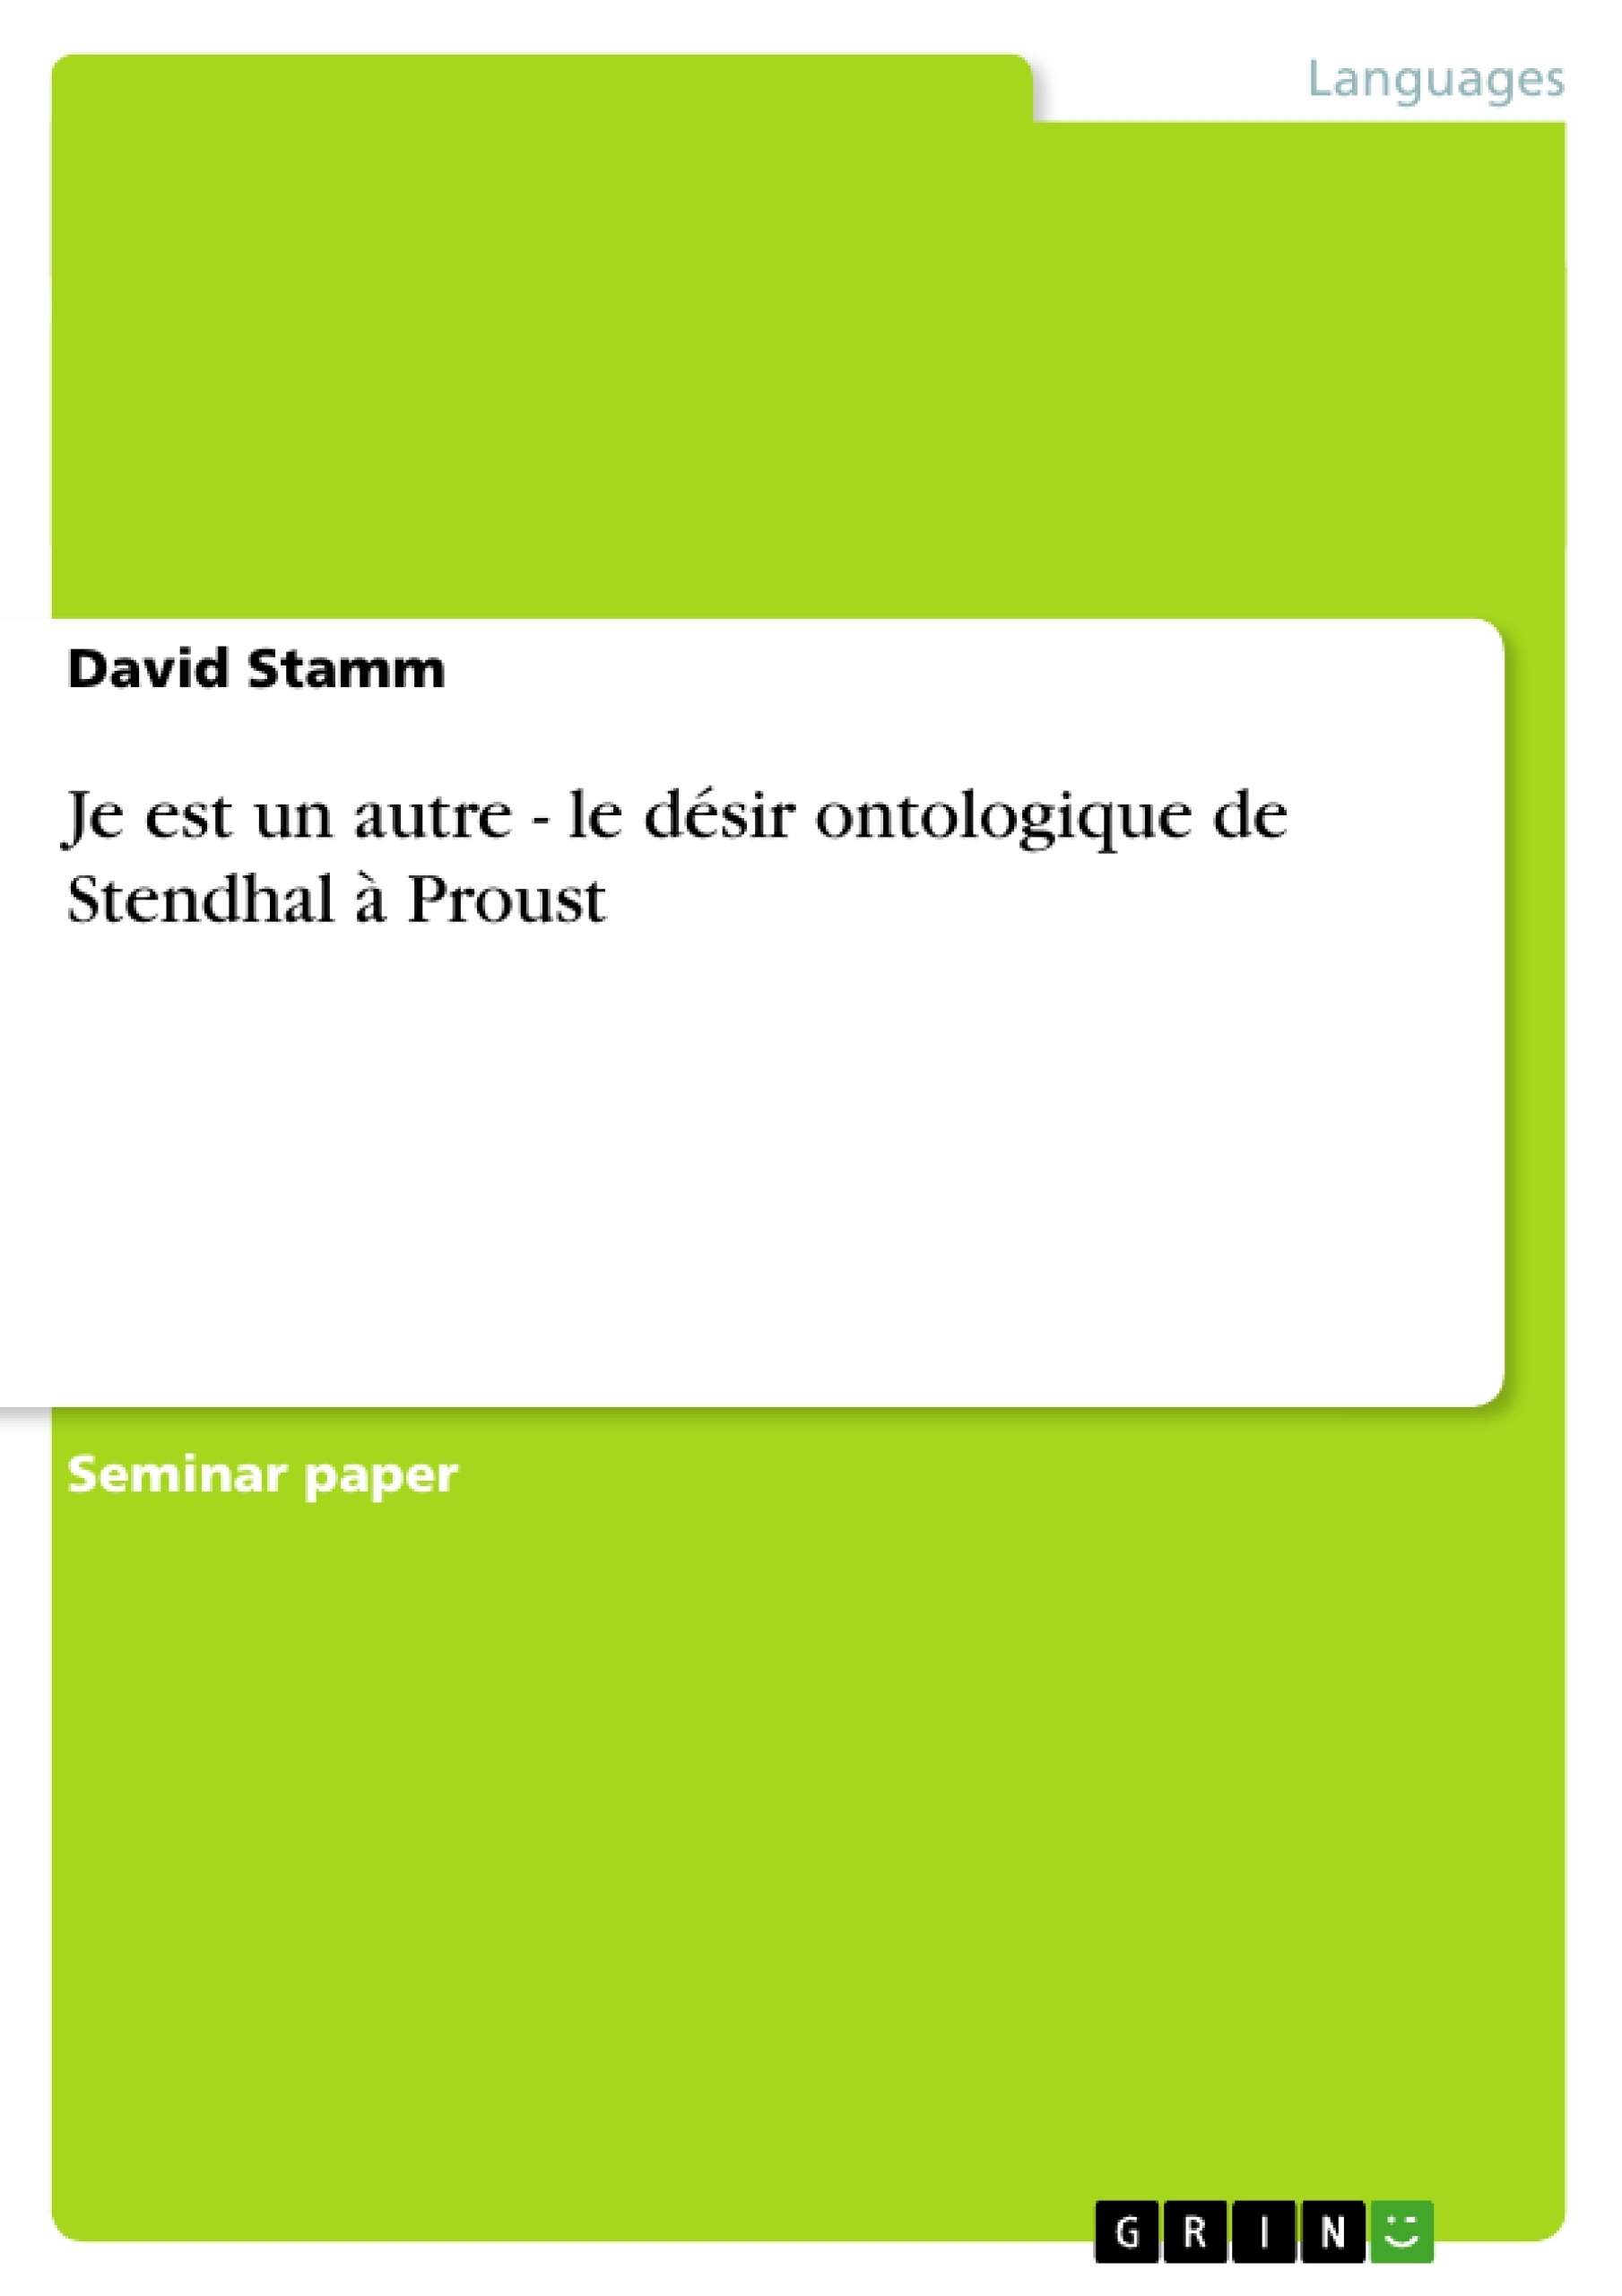 Título: Je est un autre - le désir ontologique de Stendhal à Proust